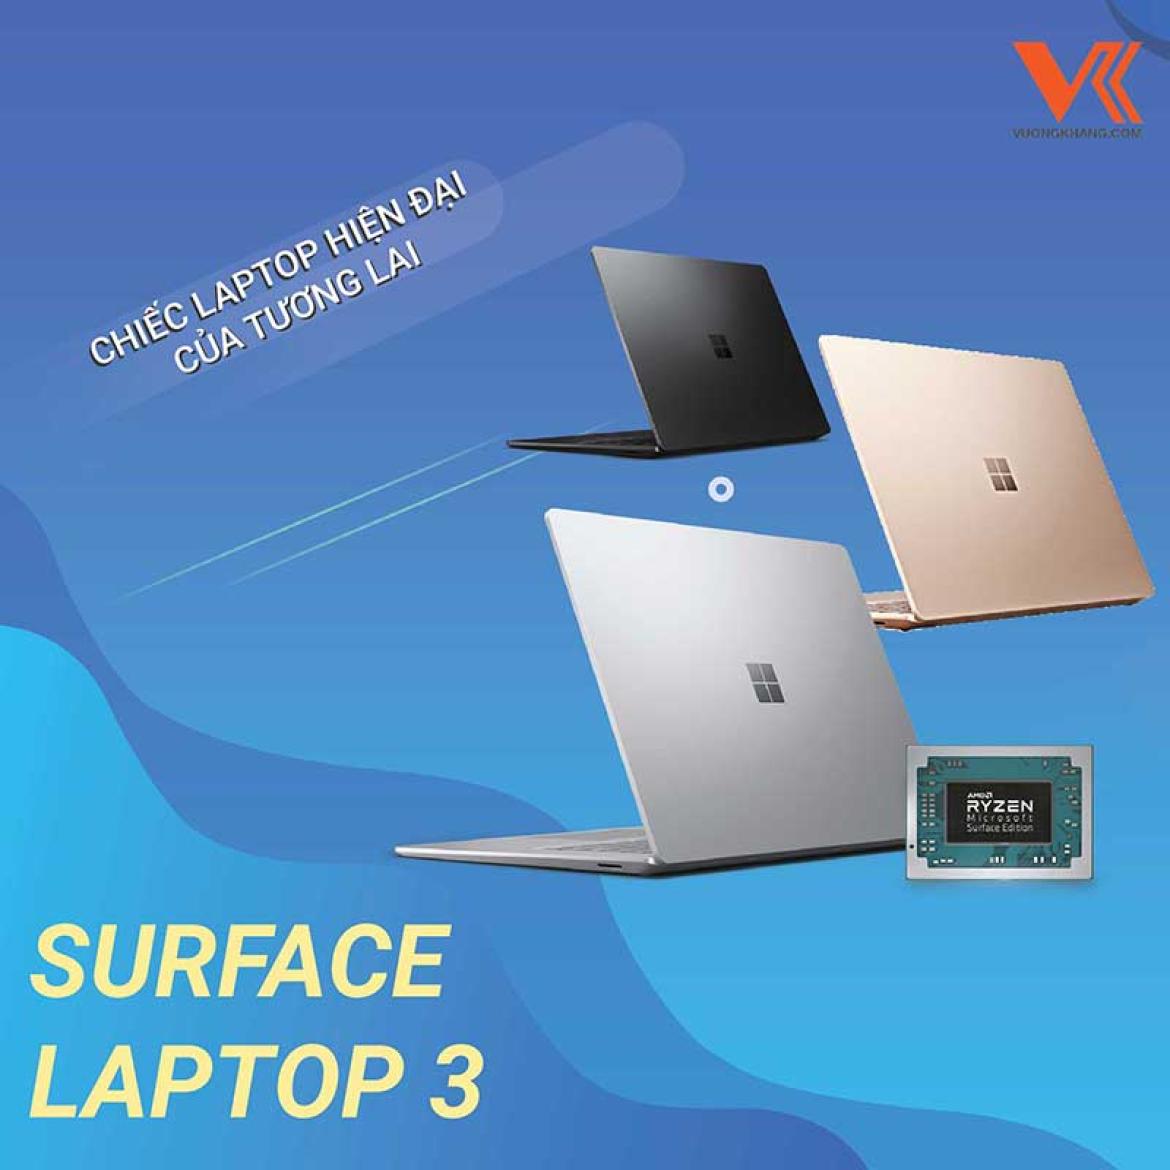 Surface Laptop 3 - Chiếc Laptop Hiện Đại Của Tương Lai